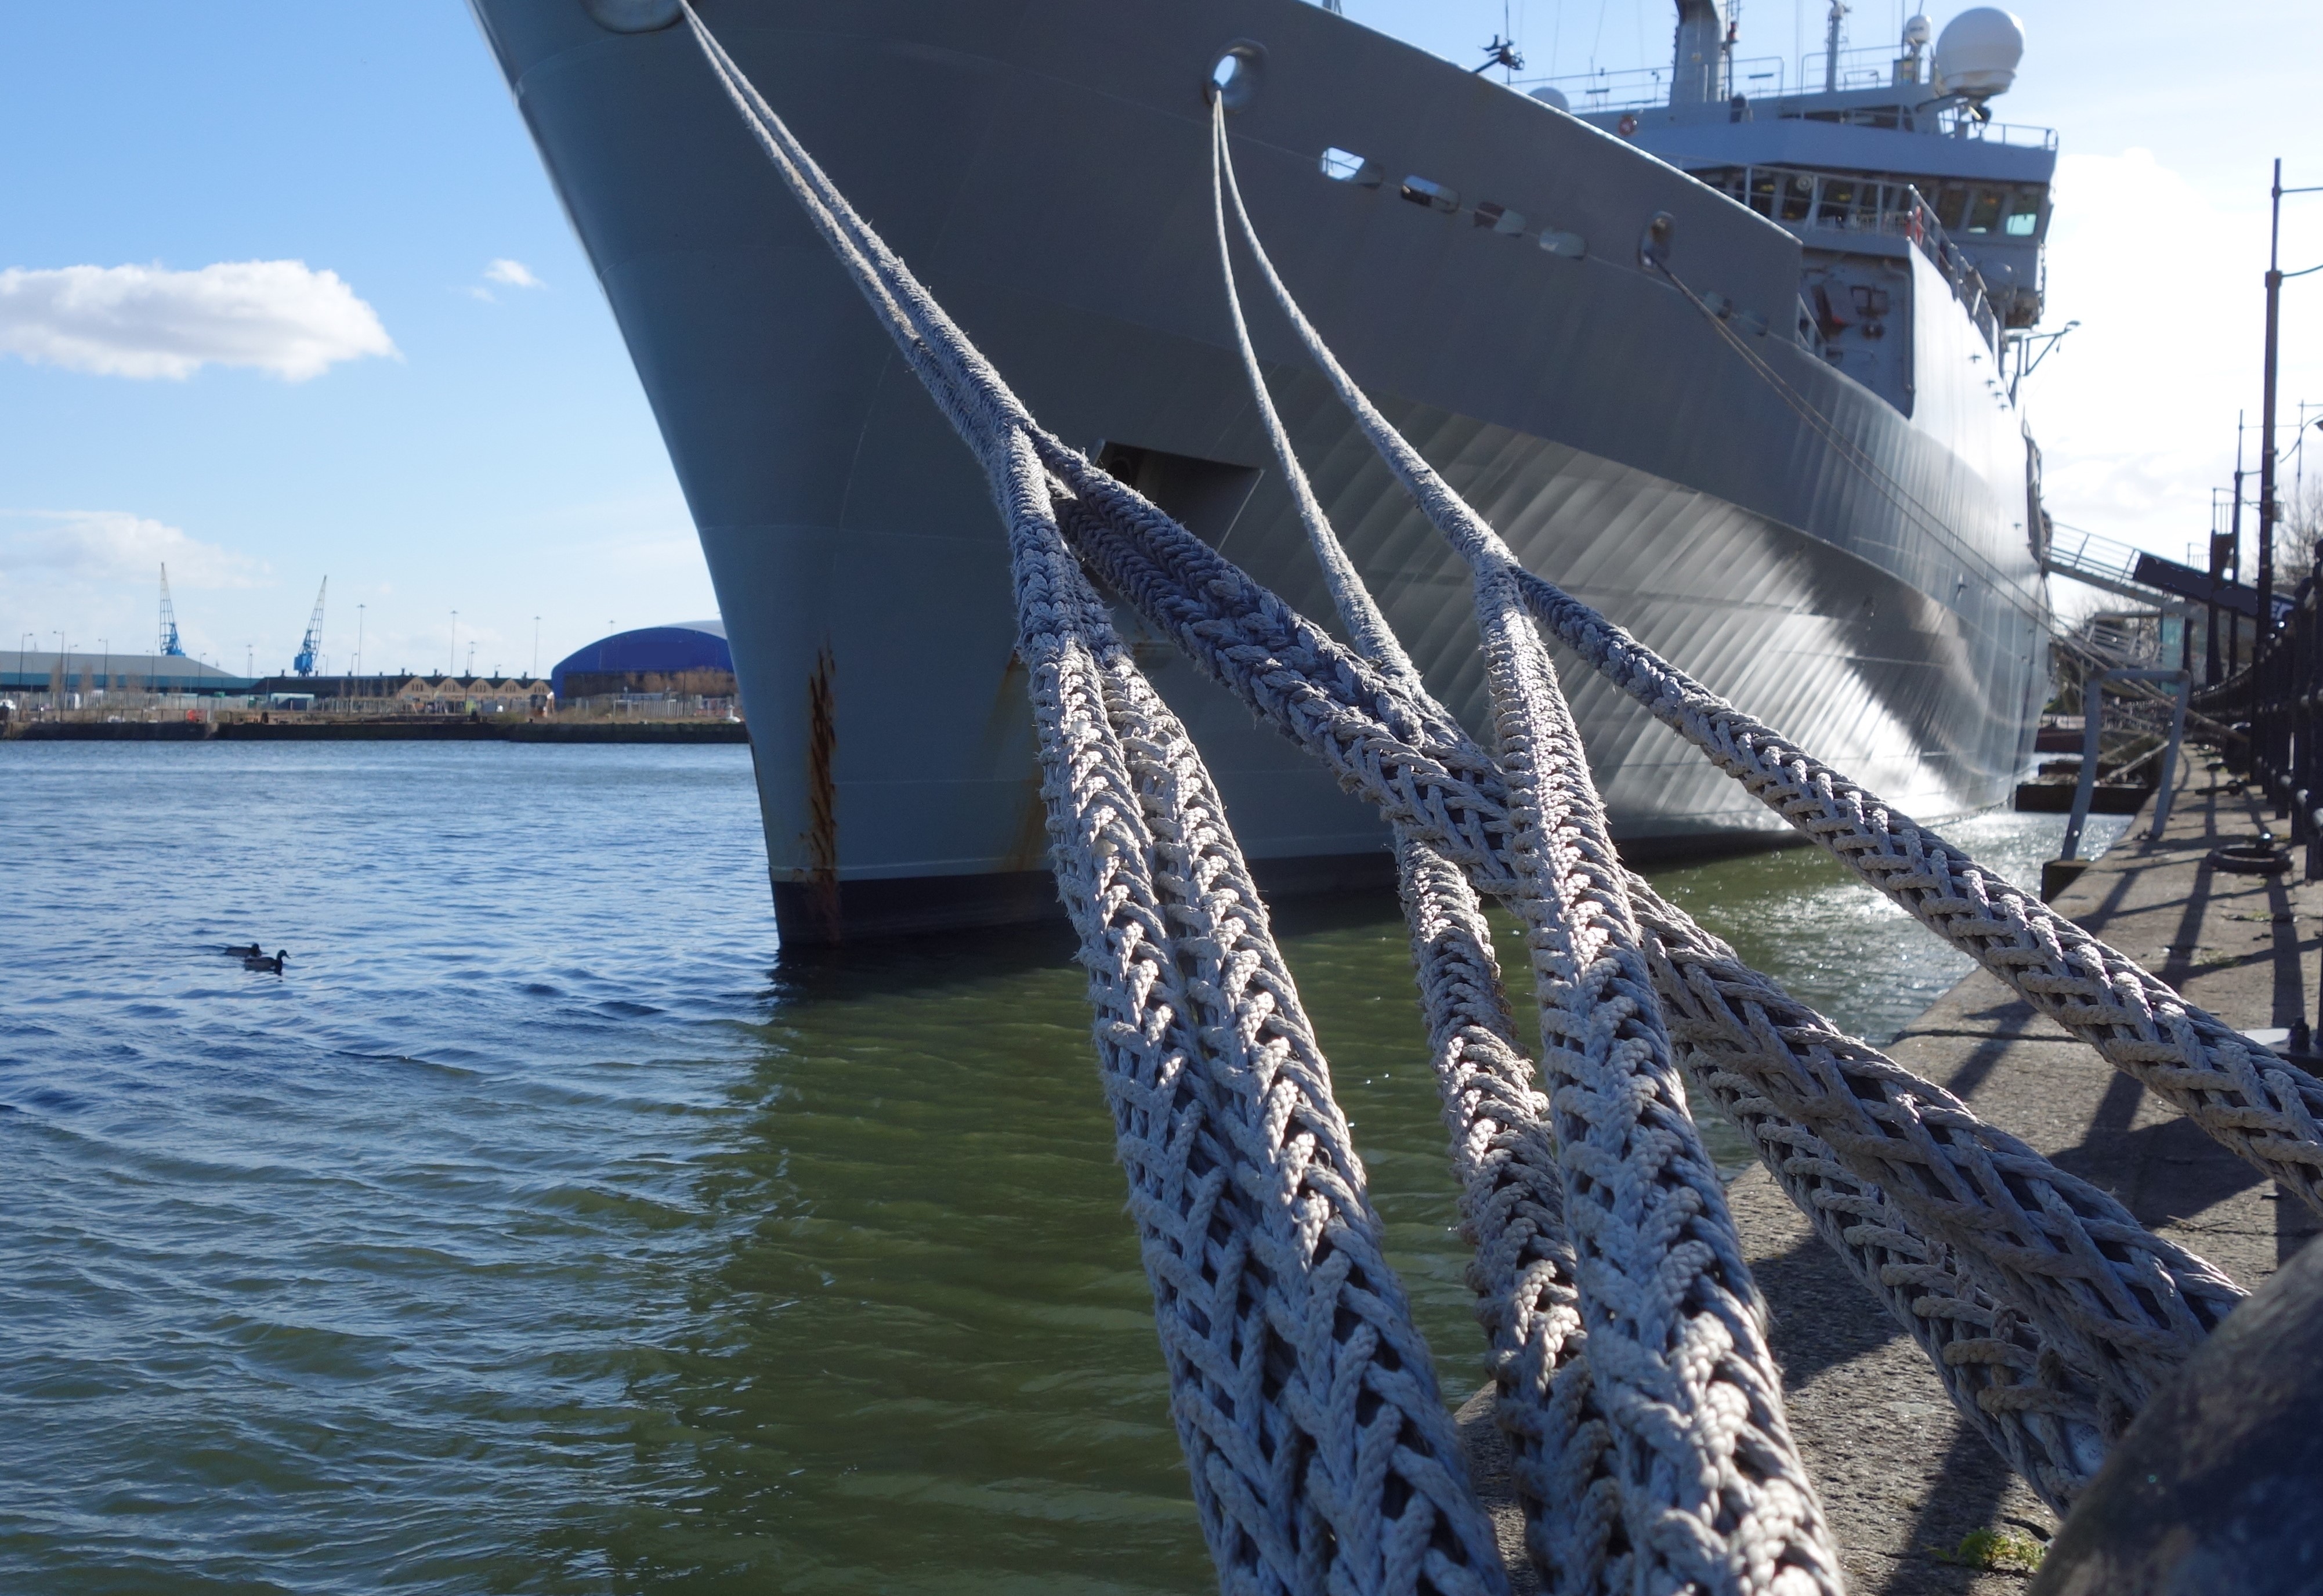 ナイロン製船舶係留用ロープのマテリアルリサイクル事業開始のお知らせ リファインバース株式会社のプレスリリース